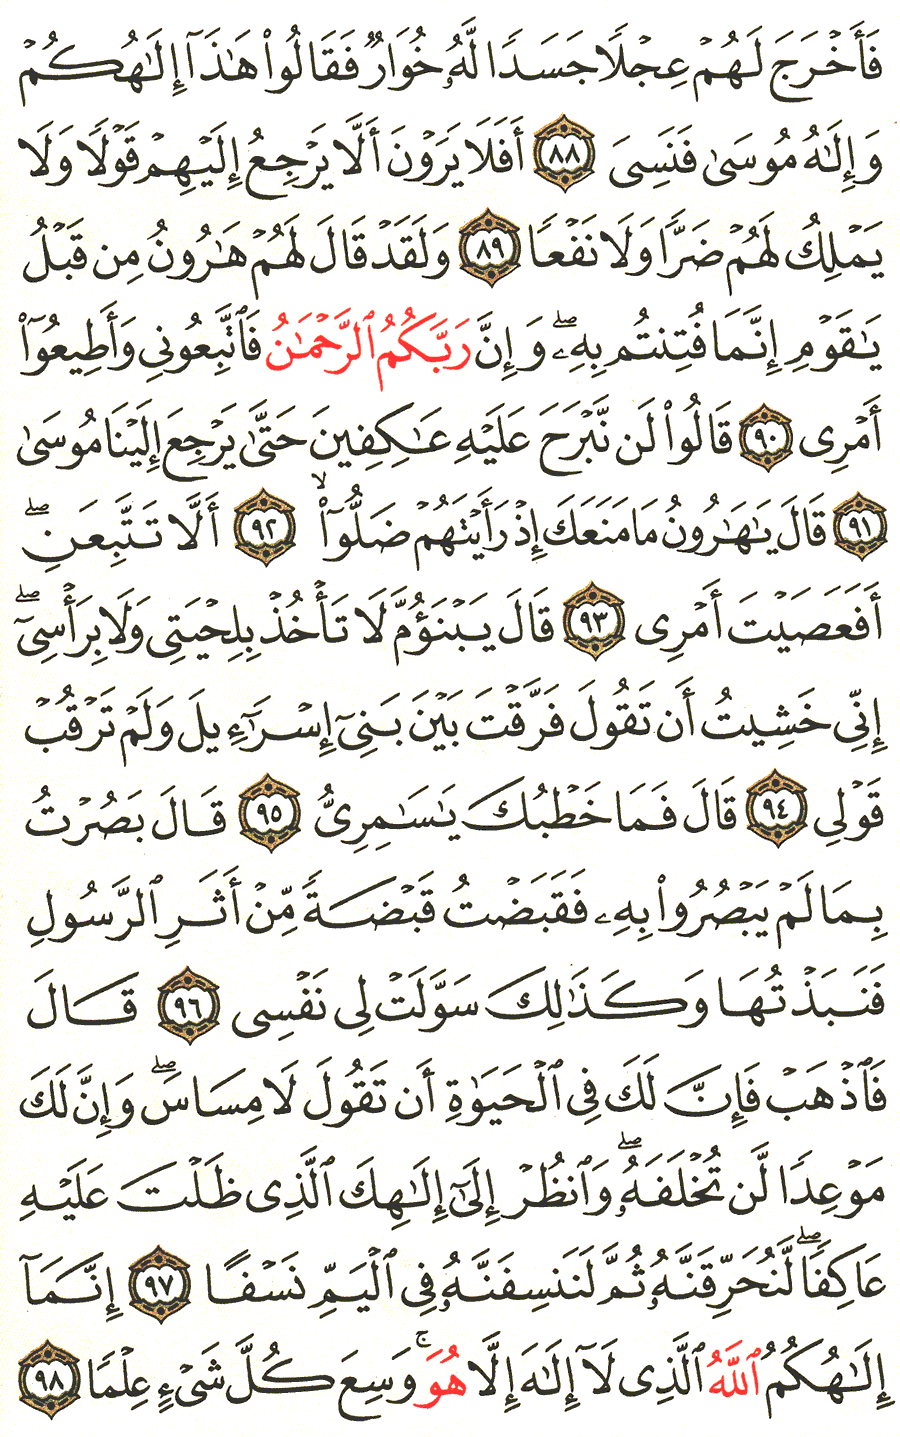 الصفحة رقم 318  من القرآن الكريم مكتوبة من المصحف